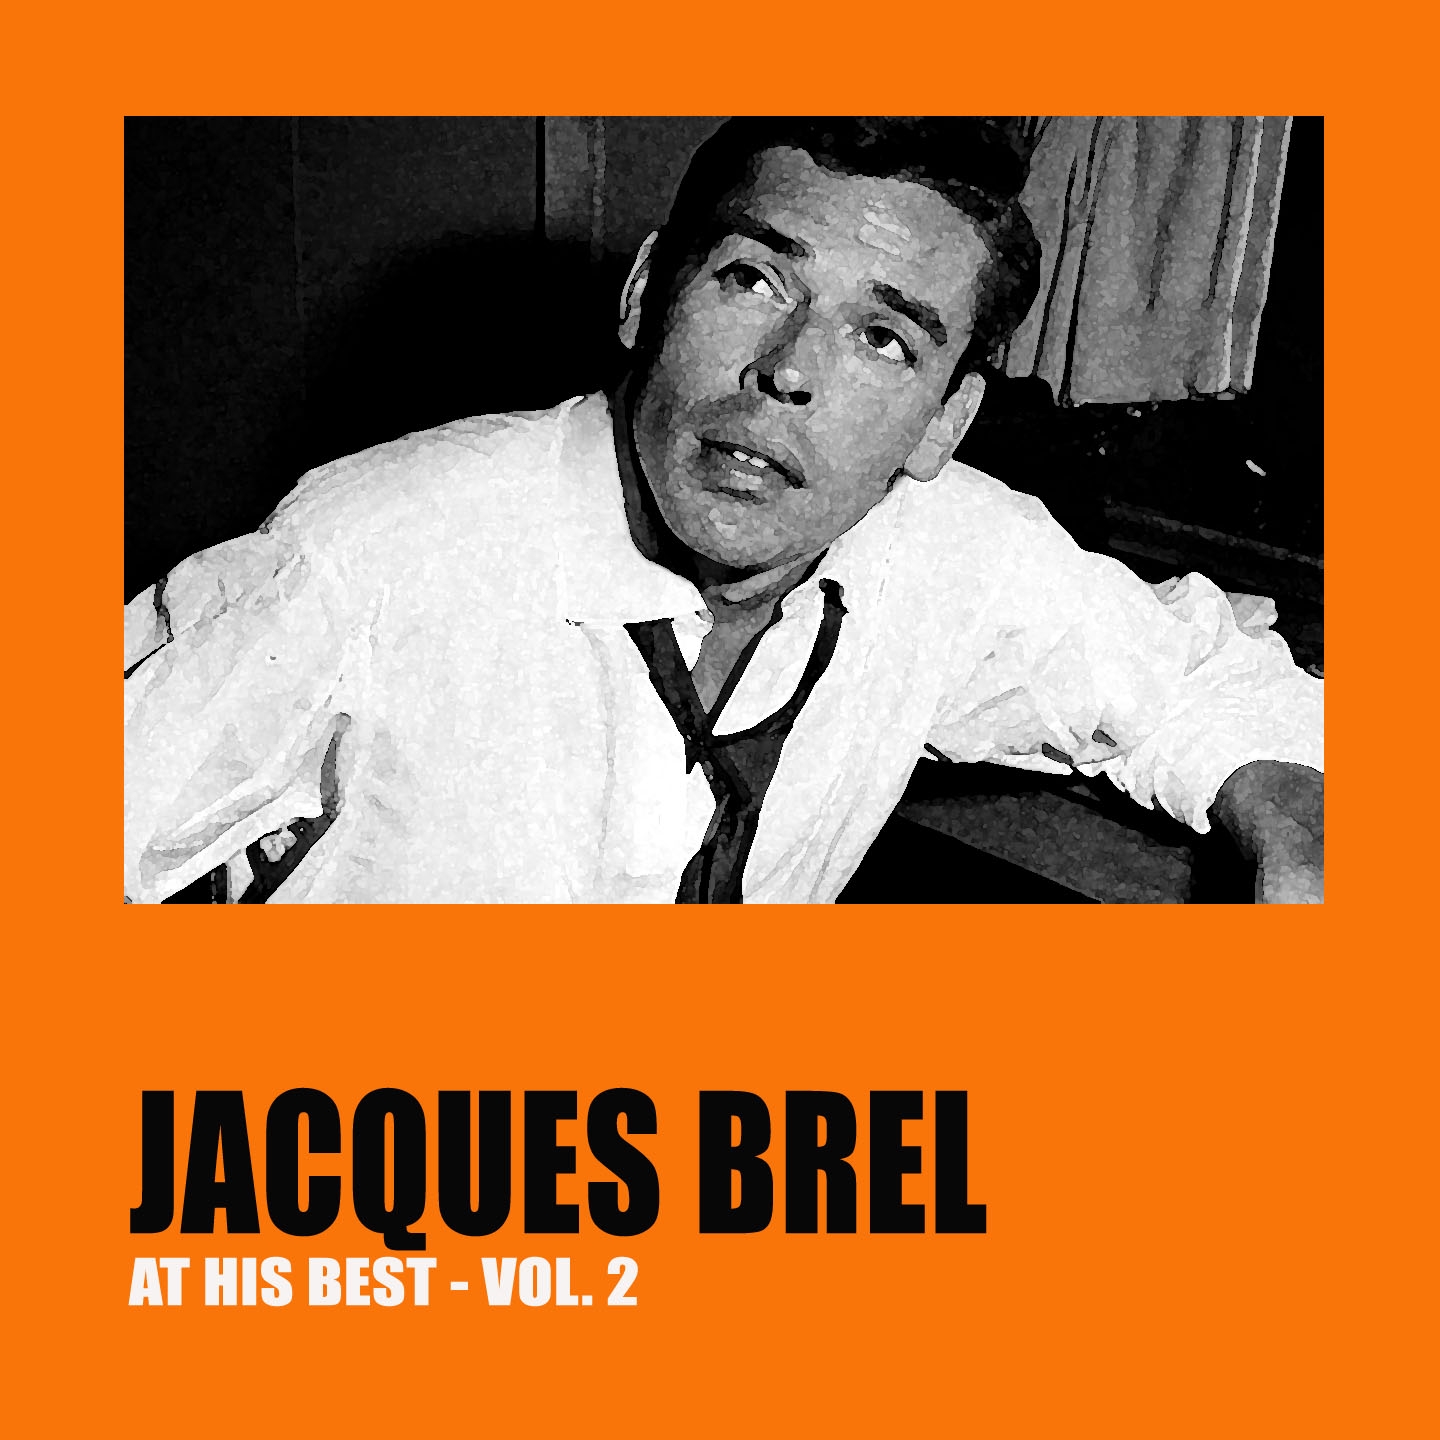 Jacques Brel at His Best Vol. 2